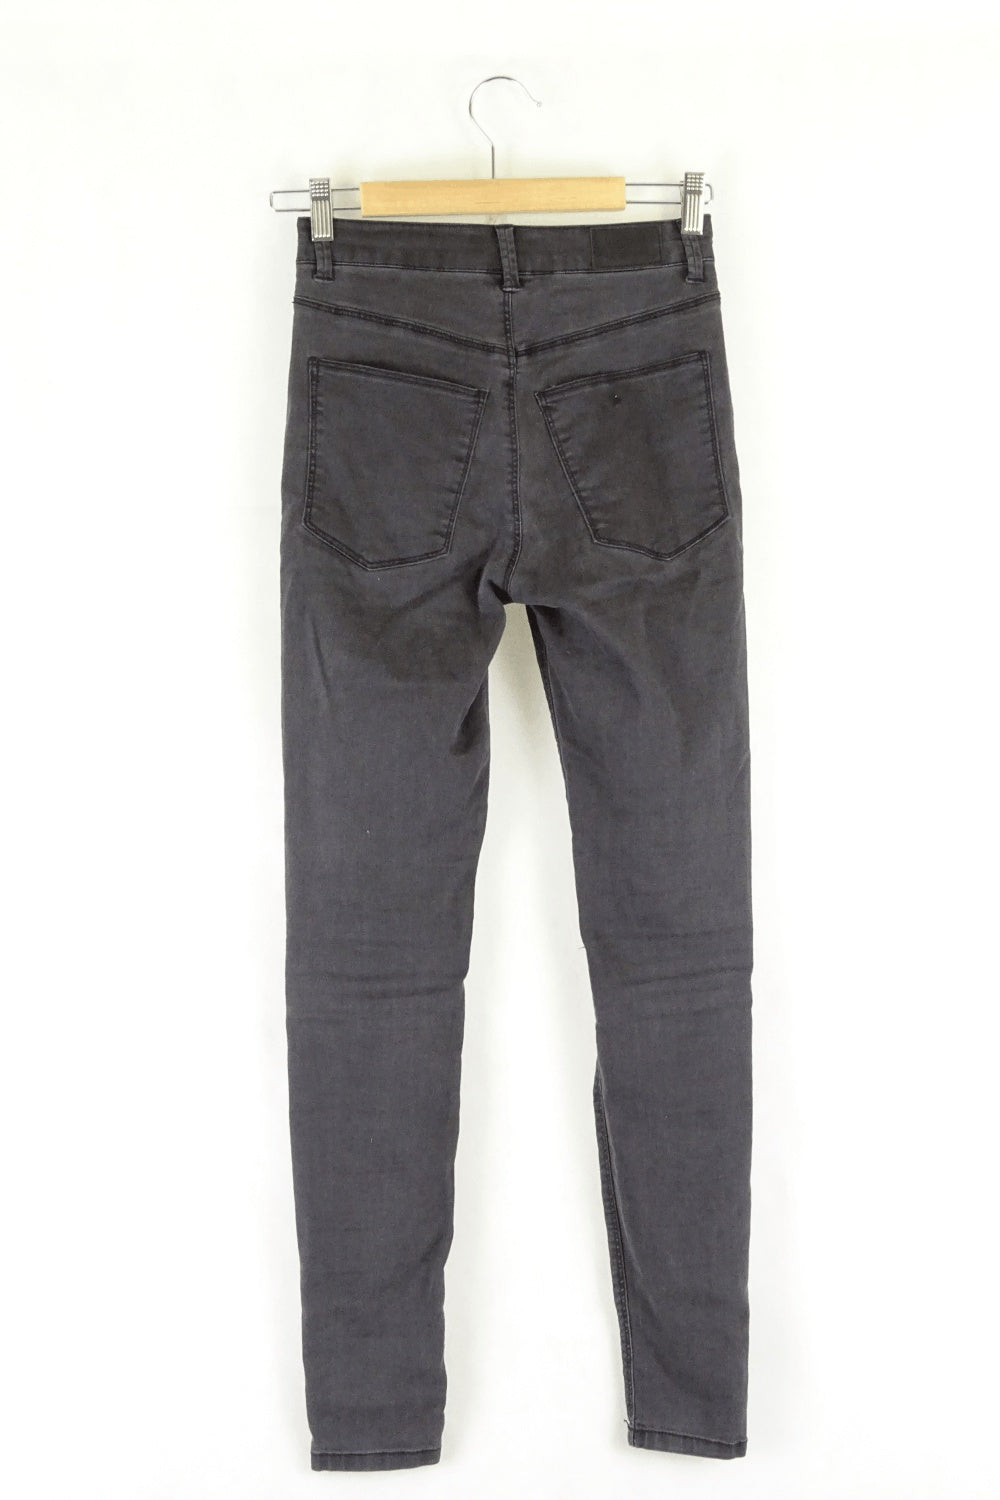 Ghanda Black Ripped Denin Jeans 6